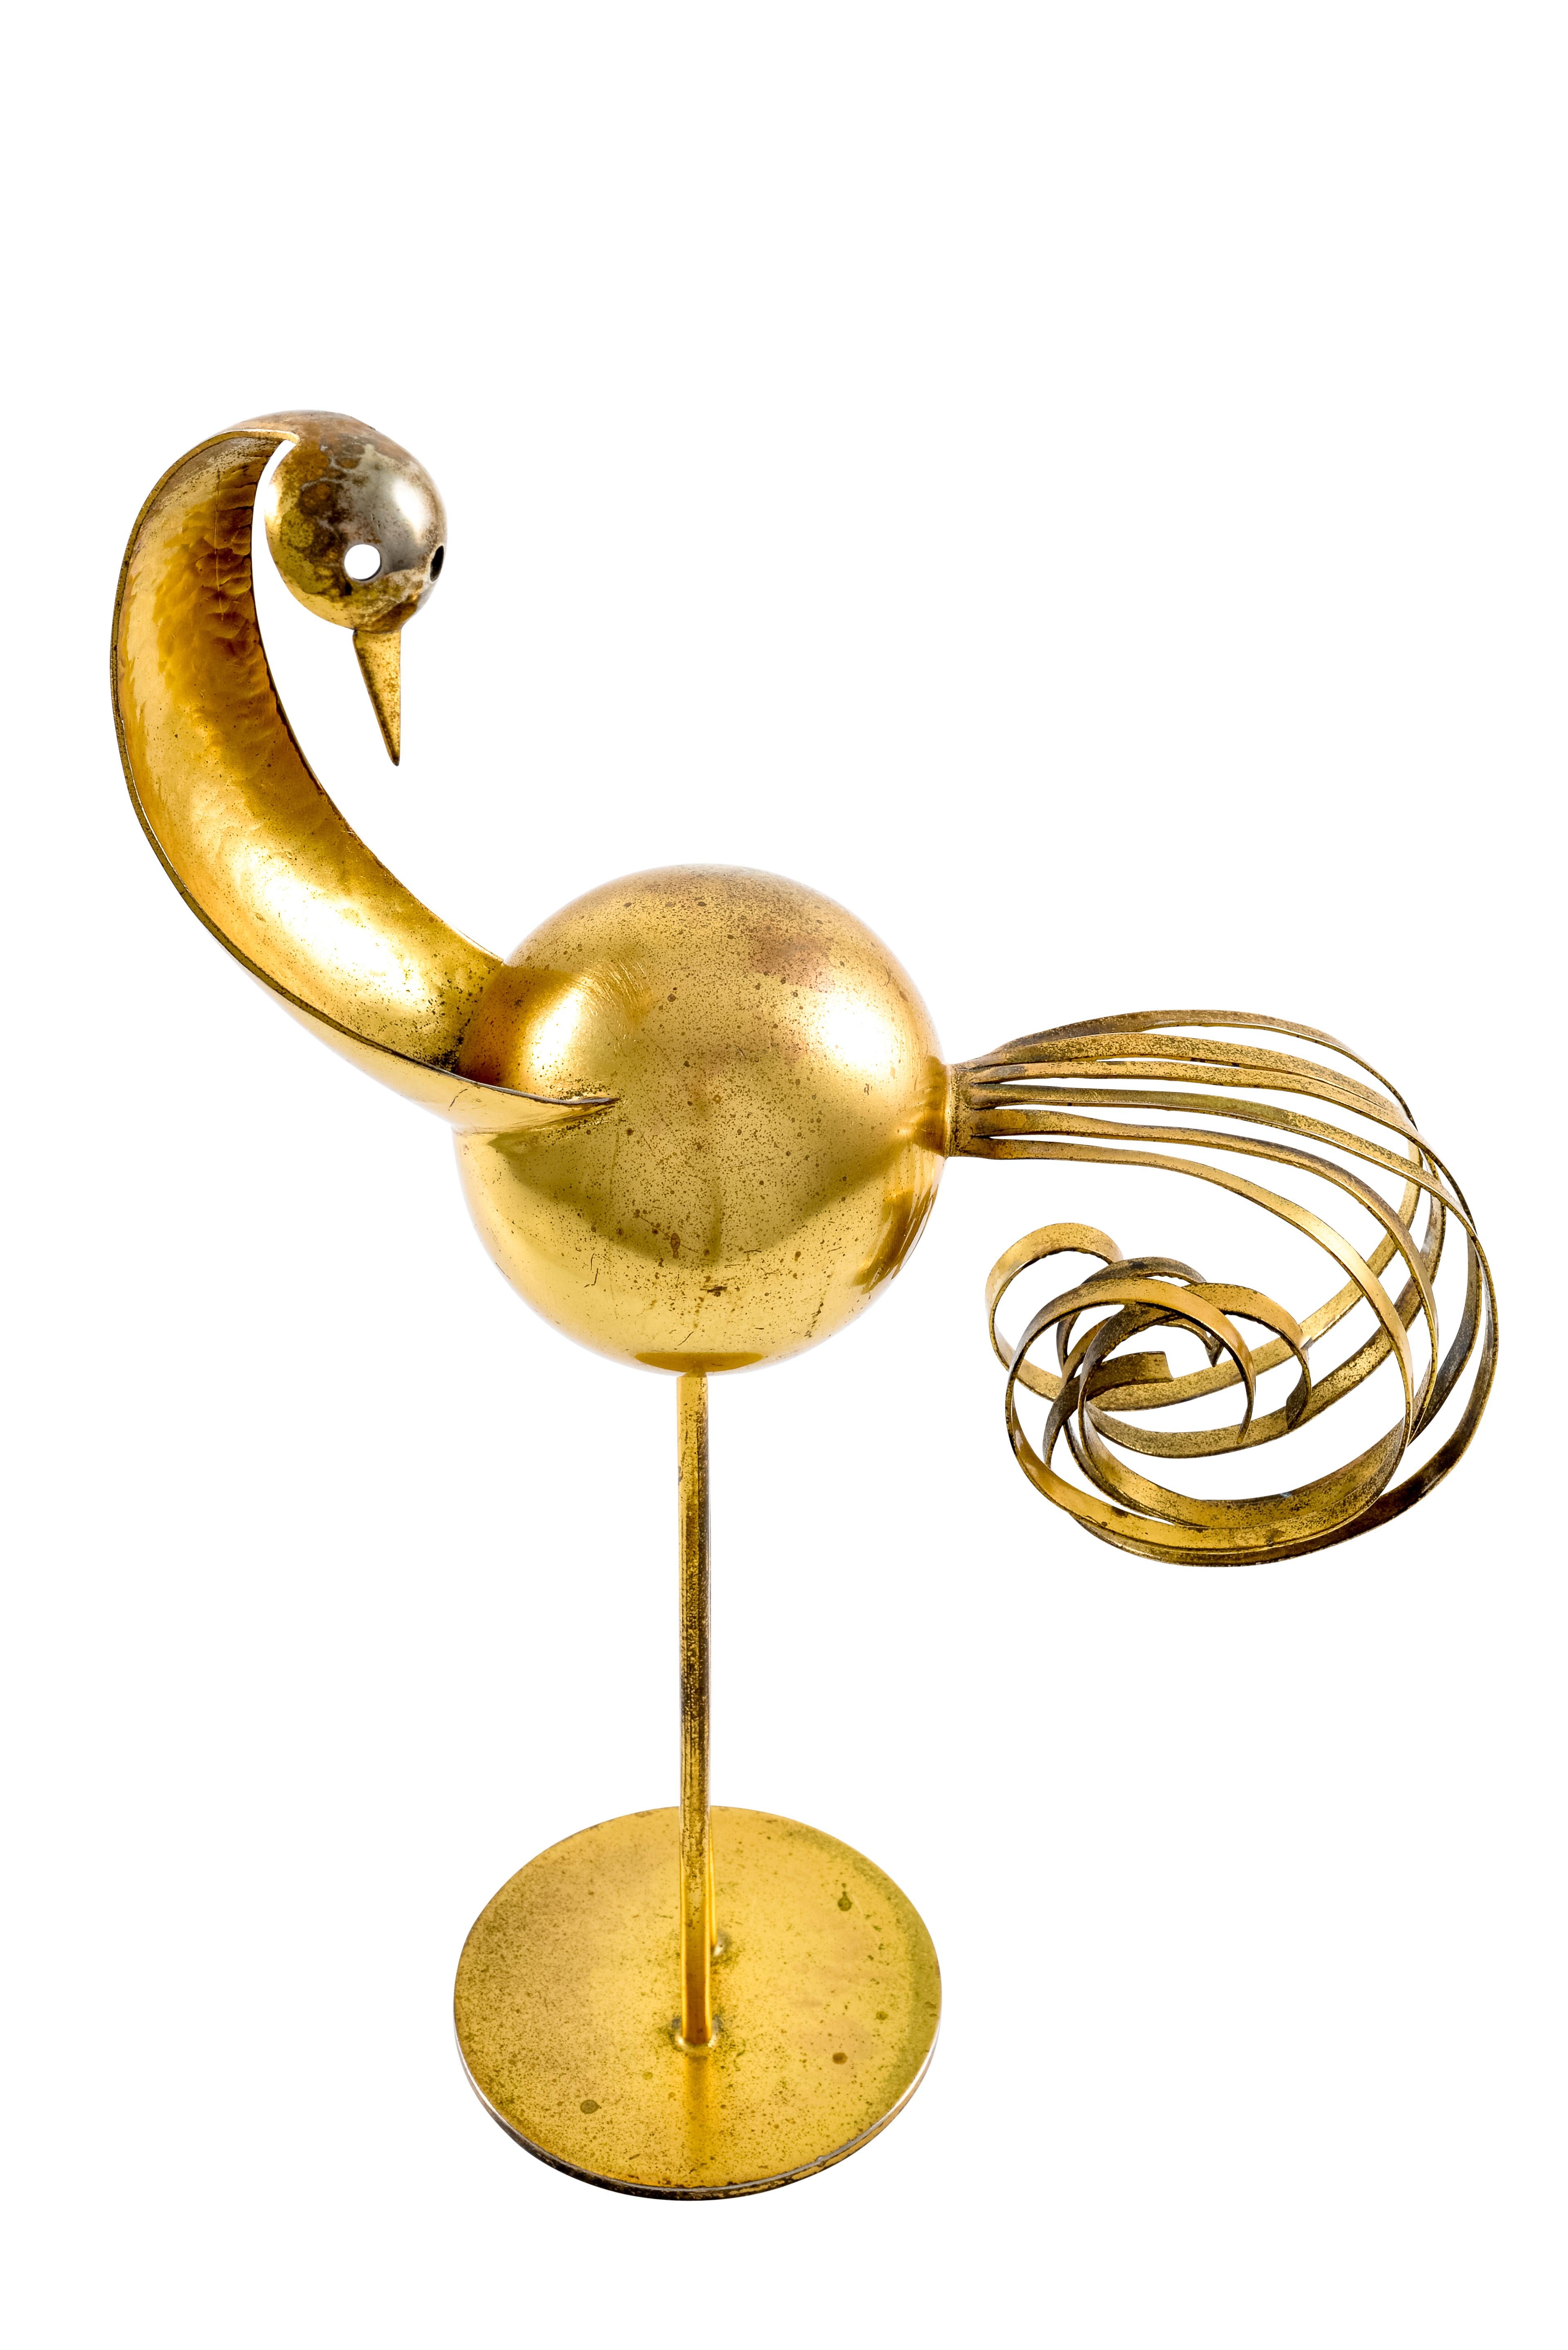 Cast Bird Sculpture Werkstatte Hagenauer Vienna Brass-plated 1930s Austrian Art Deco For Sale